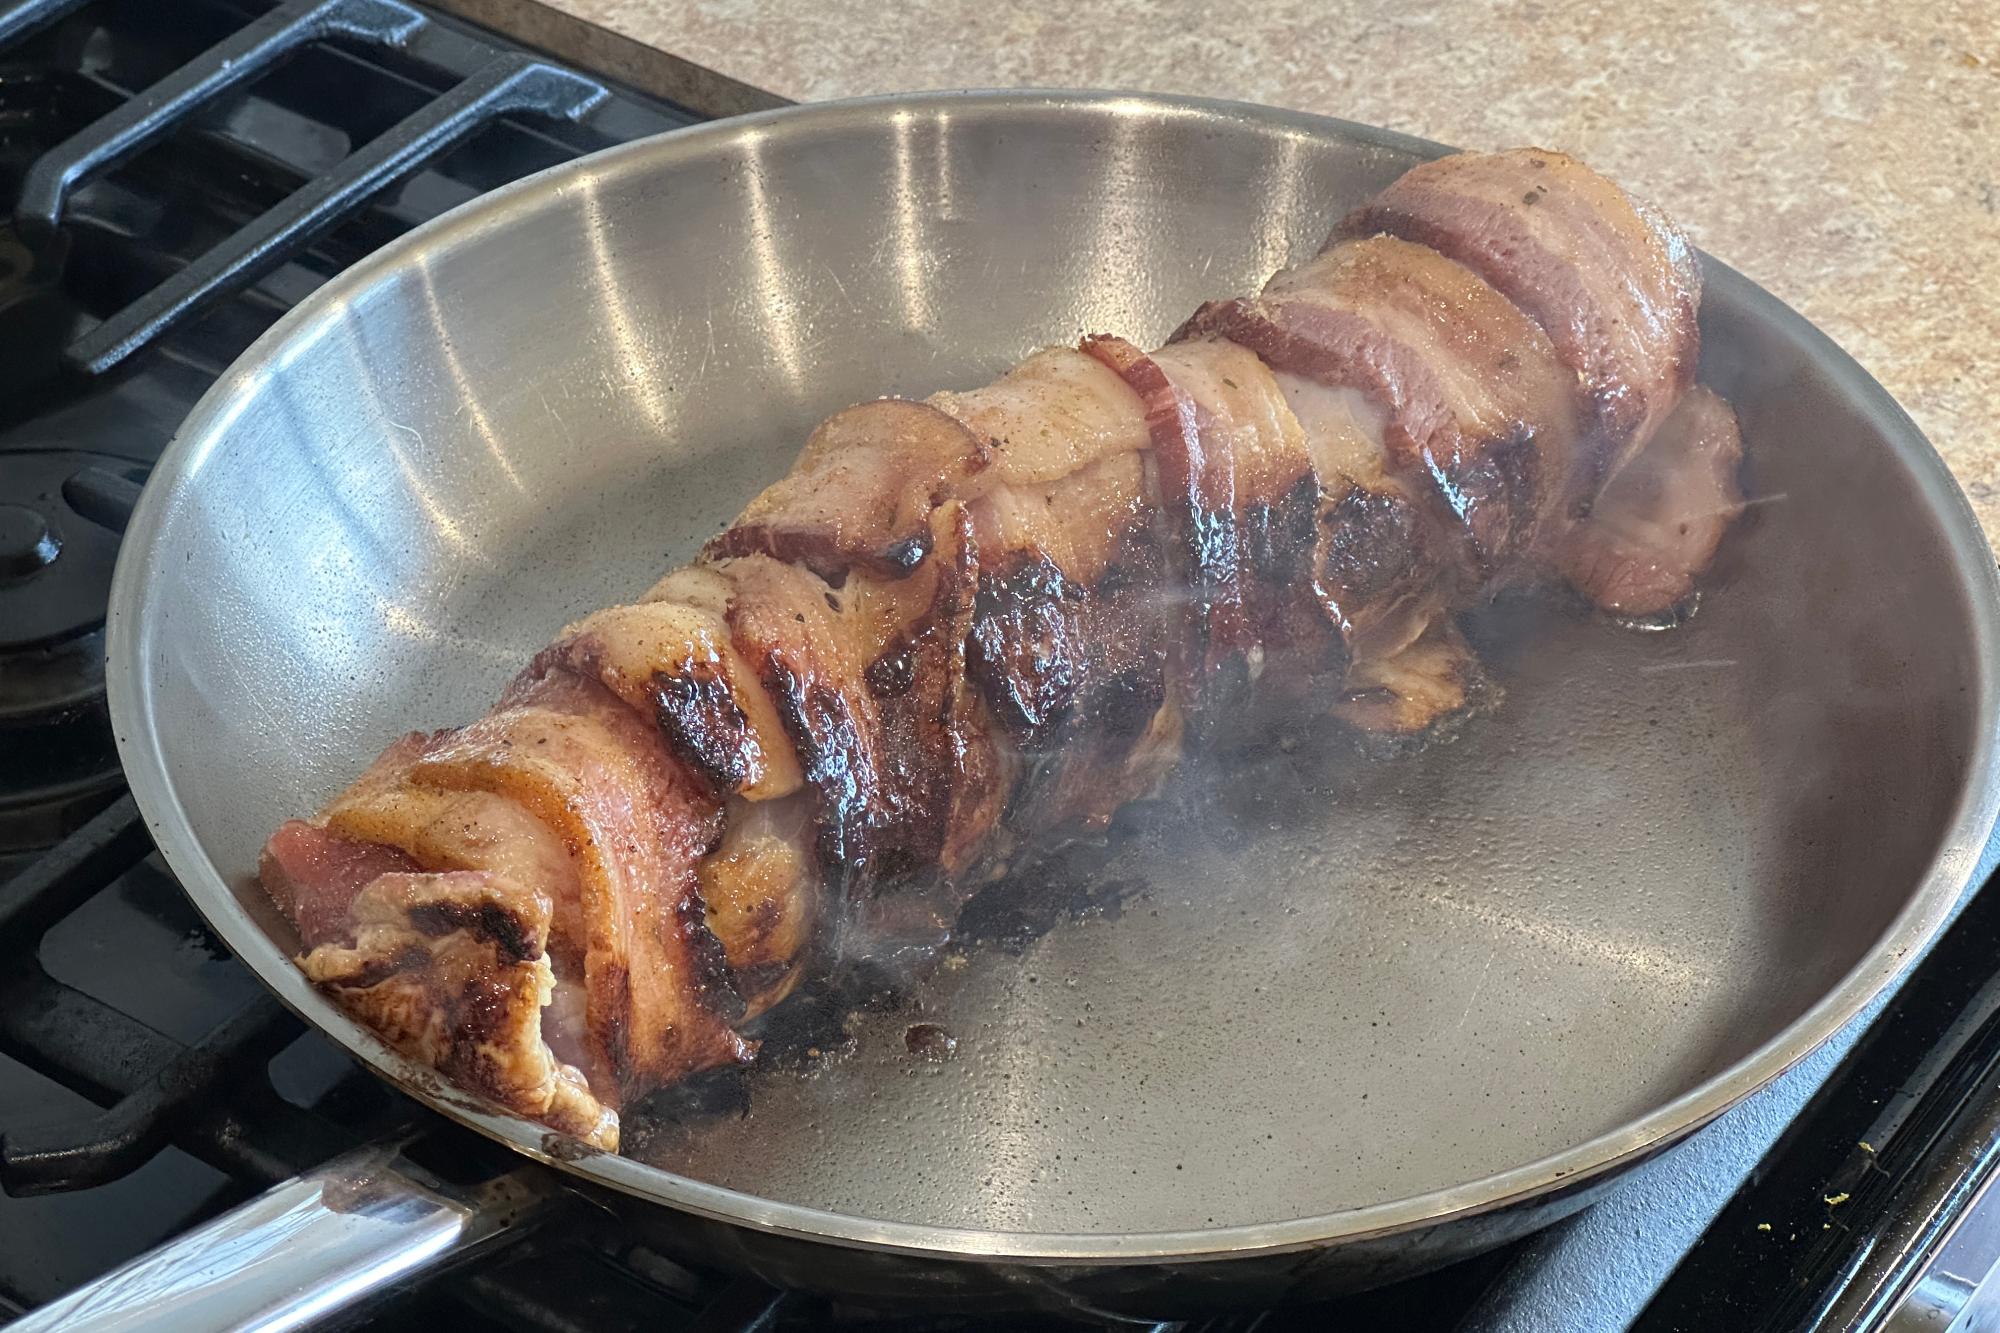 Searing pork in pan.